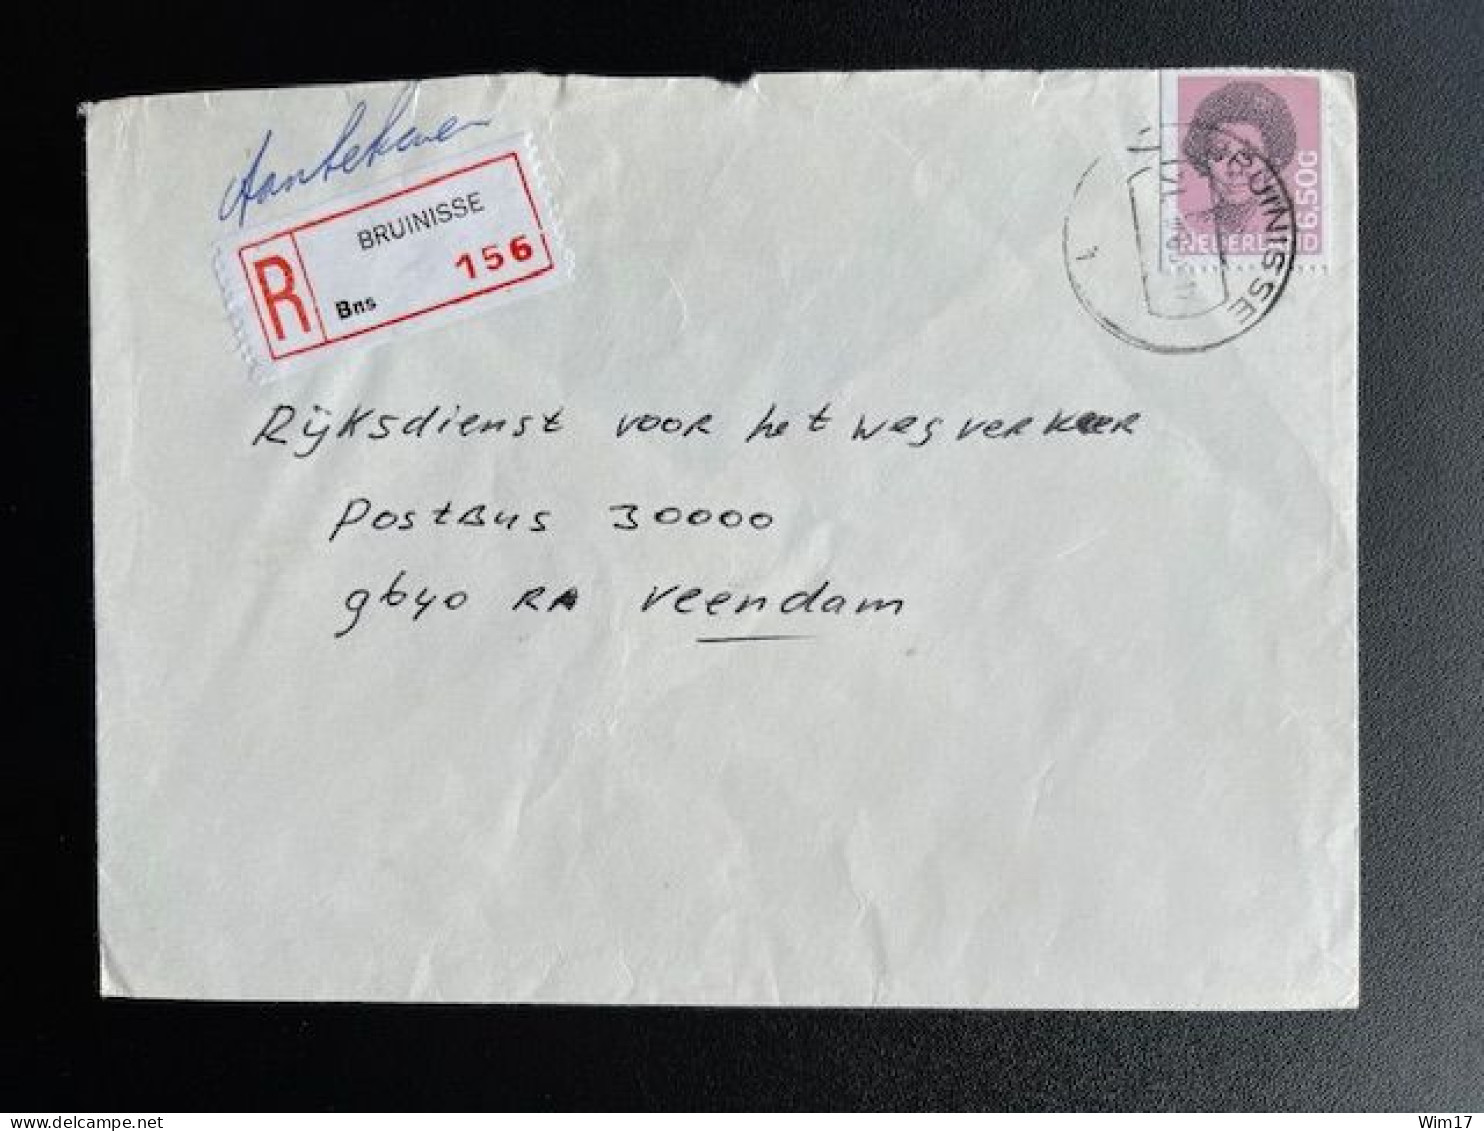 NETHERLANDS 1983 REGISTERED LETTER BRUINISSE TO VEENDAM 21-03-1983 NEDERLAND AANGETEKEND - Lettres & Documents